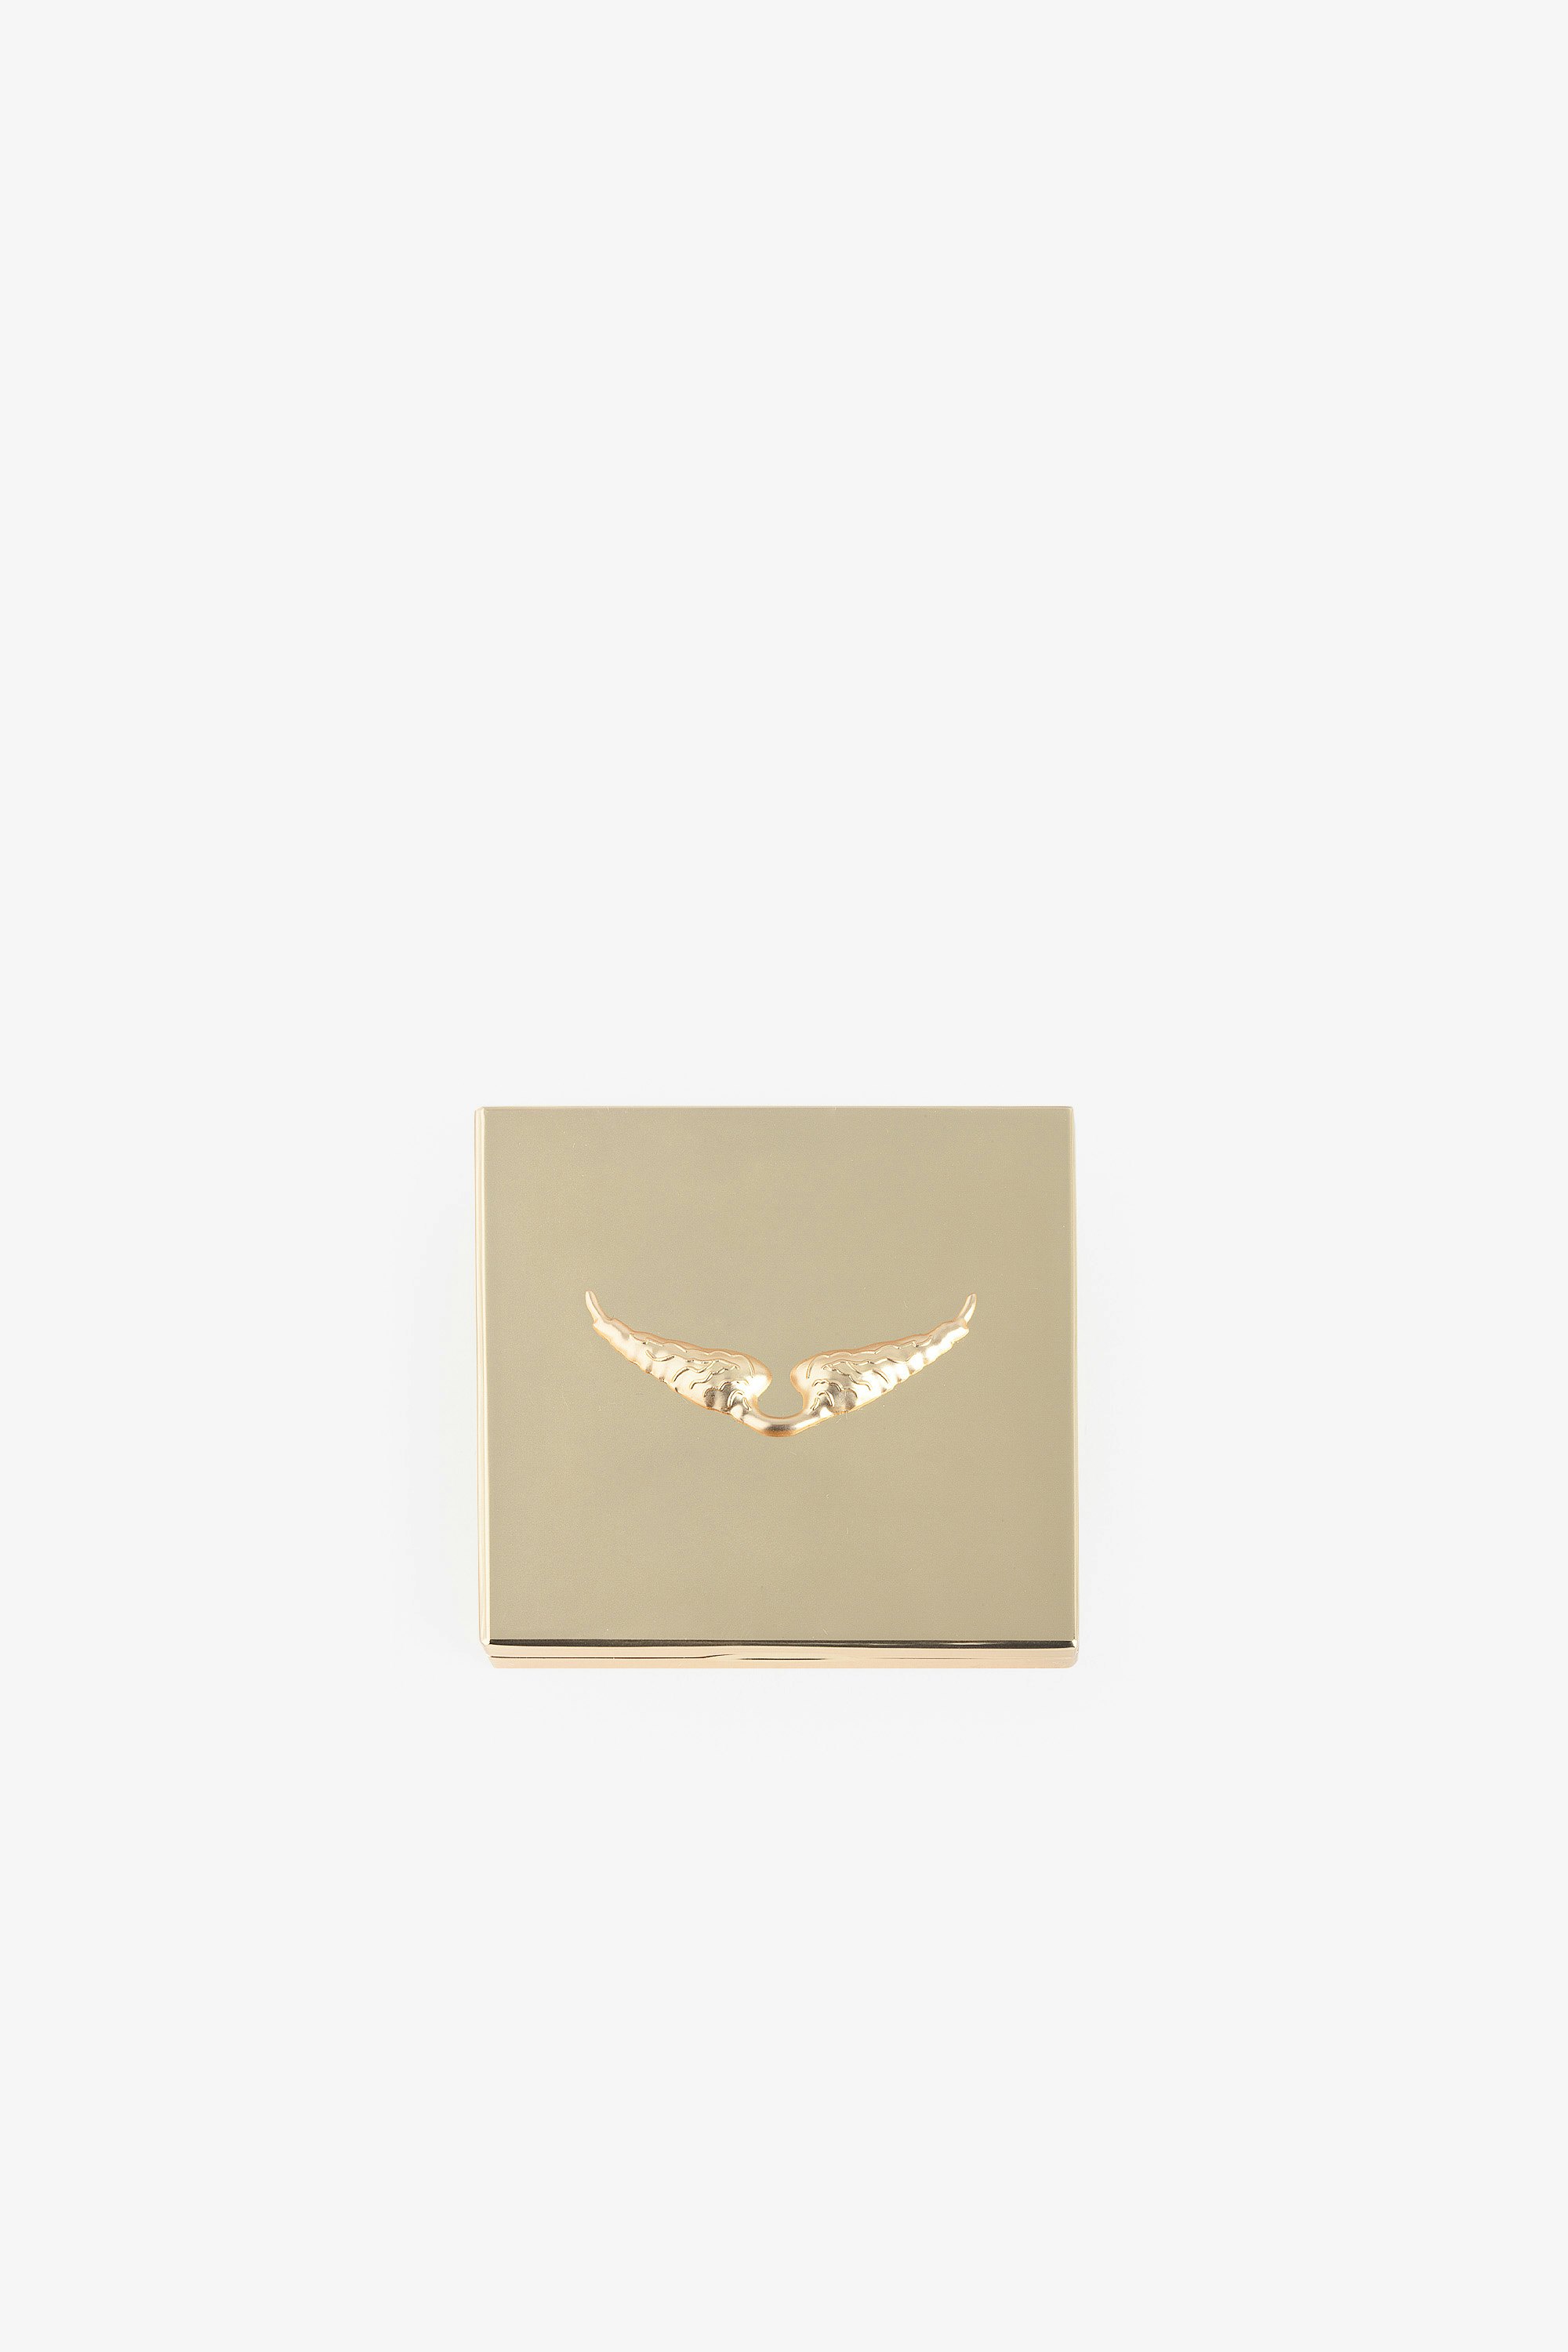 Espejo Love Yourself - Espejo de bolsillo Voltaire Vice en metal dorado.